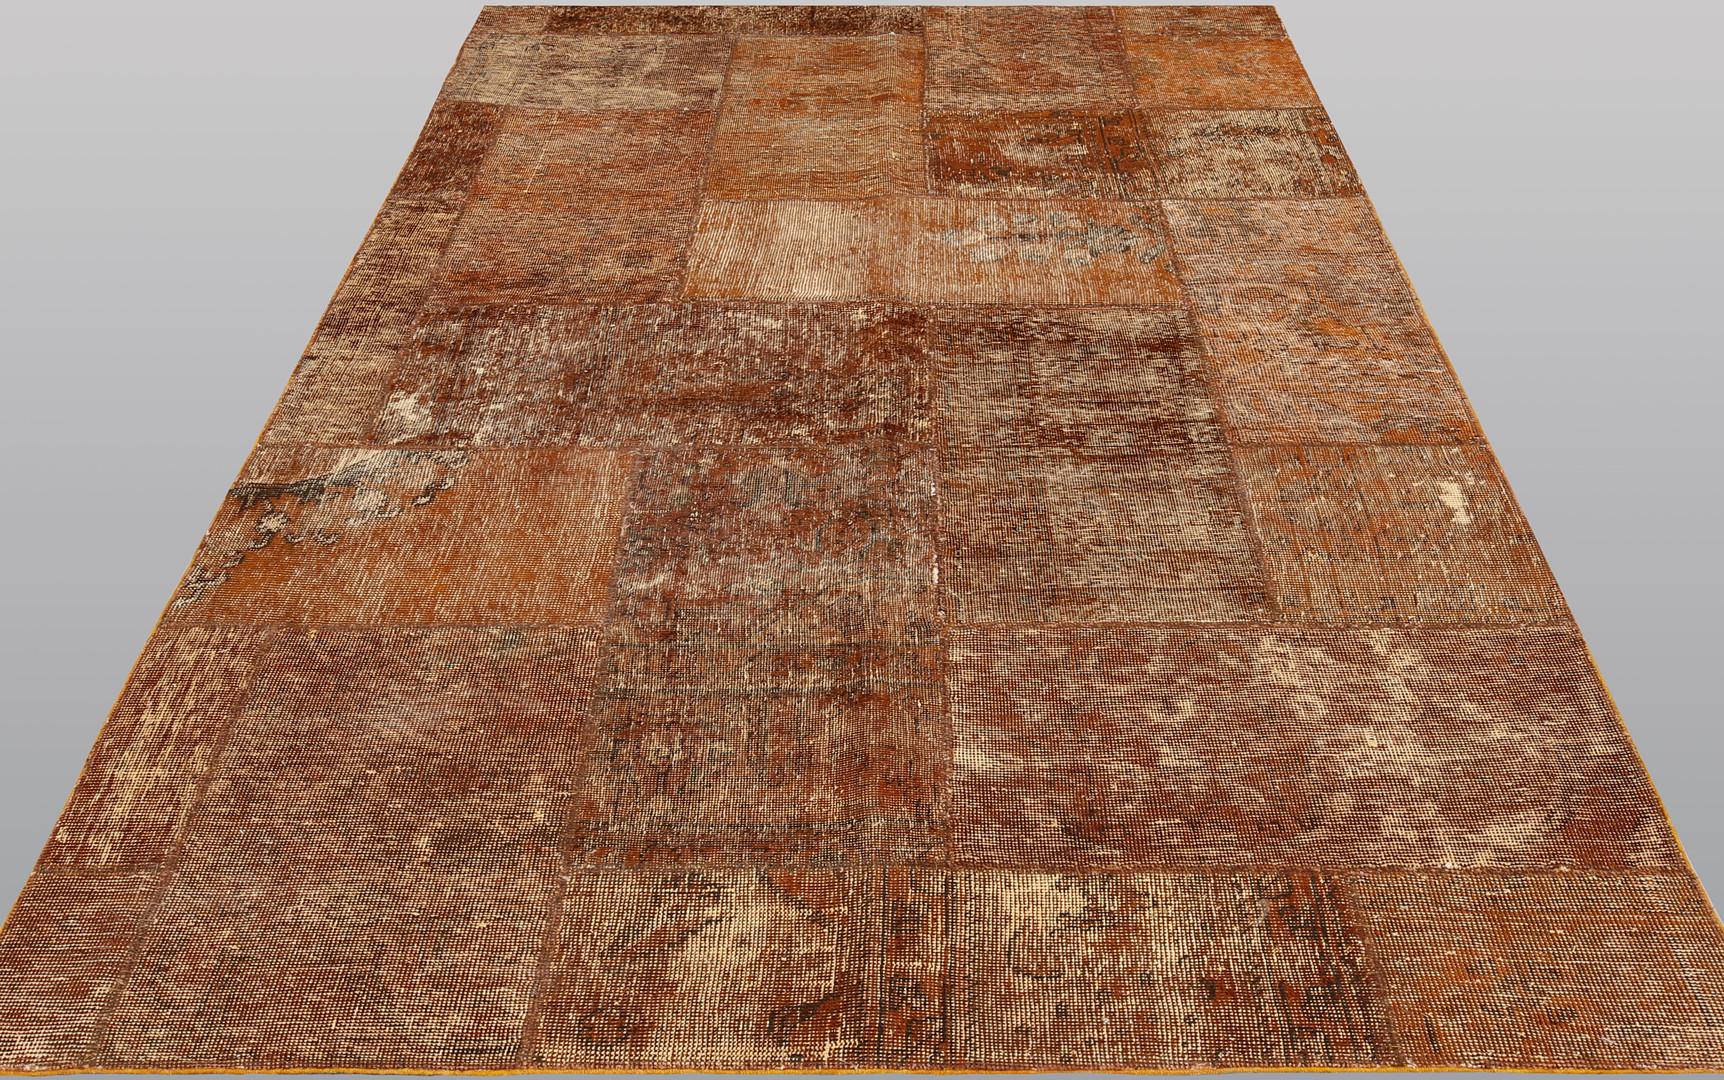 Le tapis d'Orient de taille généreuse, mesurant 250x150 centimètres, est une œuvre d'art qui reflète la riche tradition et le savoir-faire artisanal de la culture orientale. Fabriqué en laine de haute qualité, ce tapis apporte non seulement chaleur